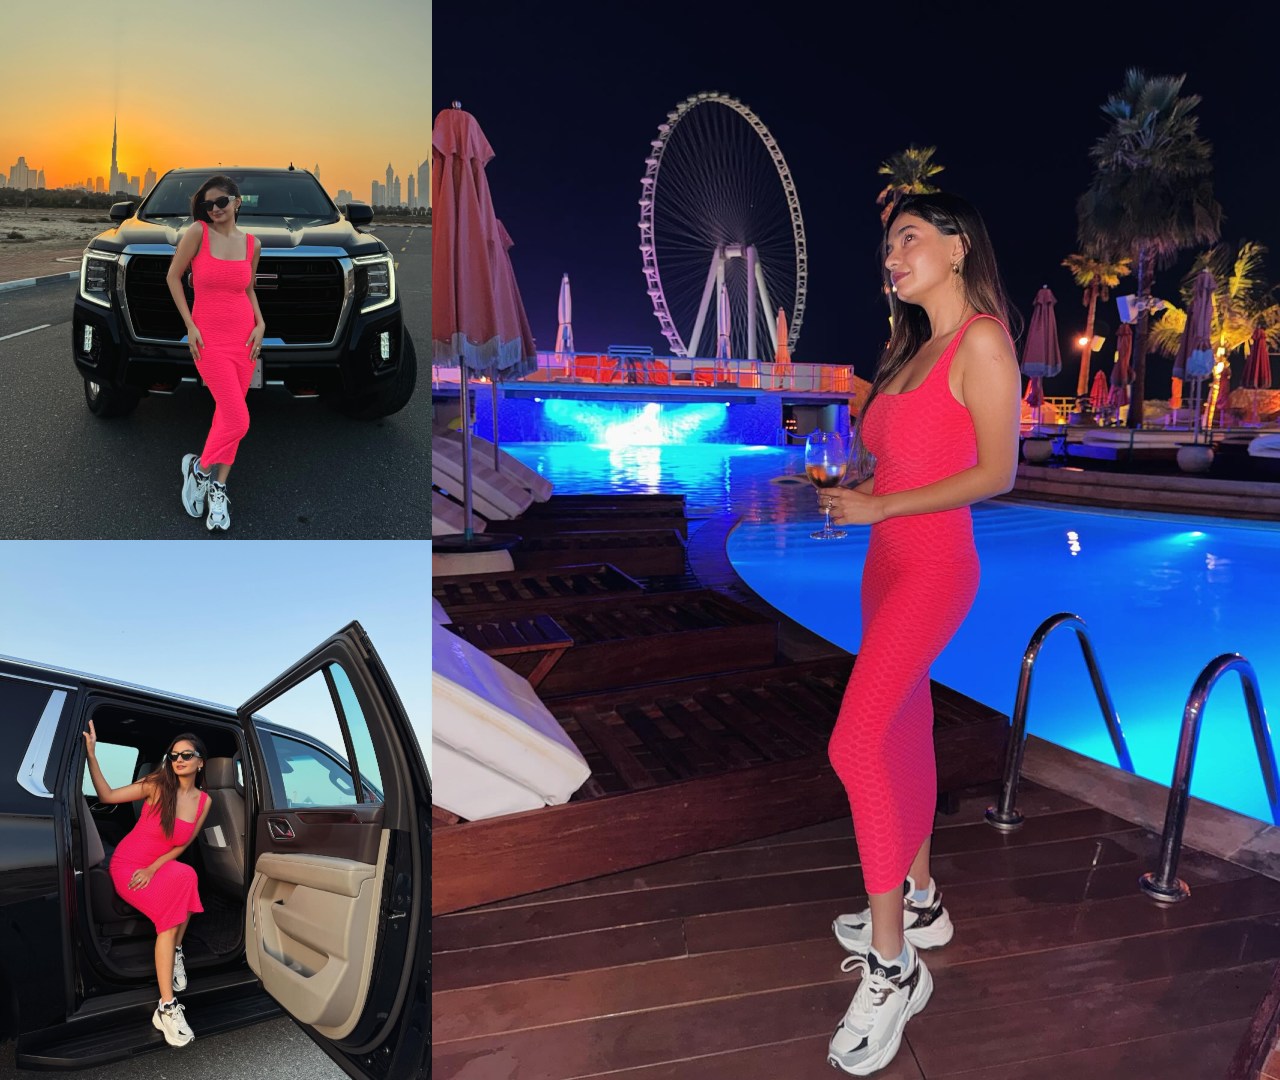 दुबई में आलीशान छुट्टियां मना रही है अनुष्का सेन, गुलाबी बॉडीकॉन ड्रेस में दिखाया हुस्न 38500